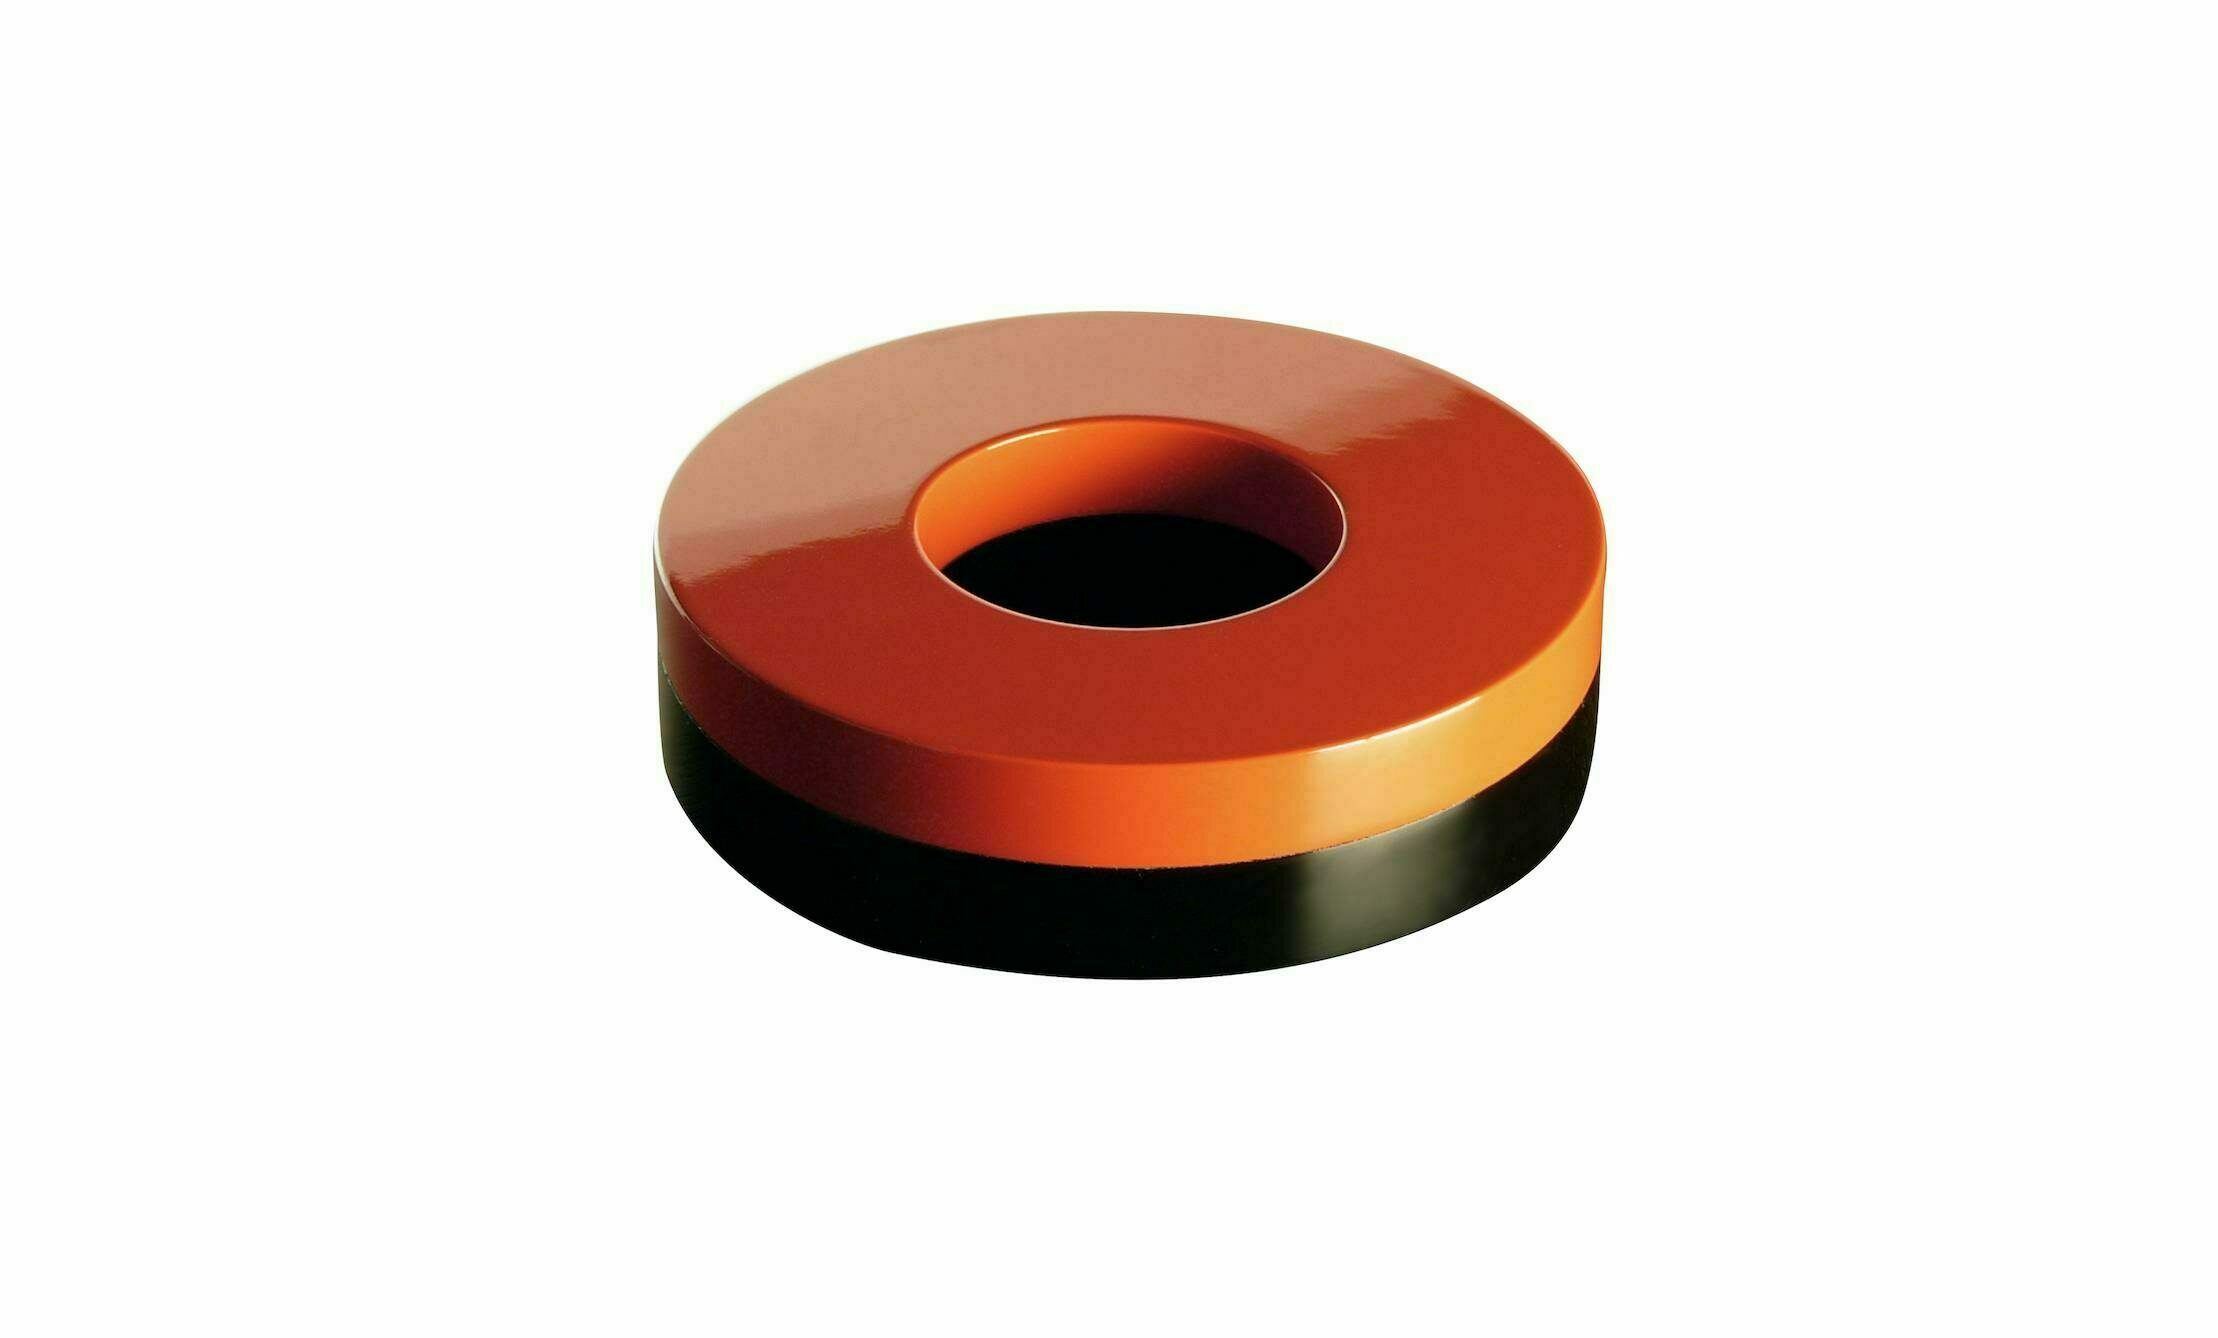 Andrée Putman, boite de forme ronde en bois laqué noir et orange, avec un trou au milieu